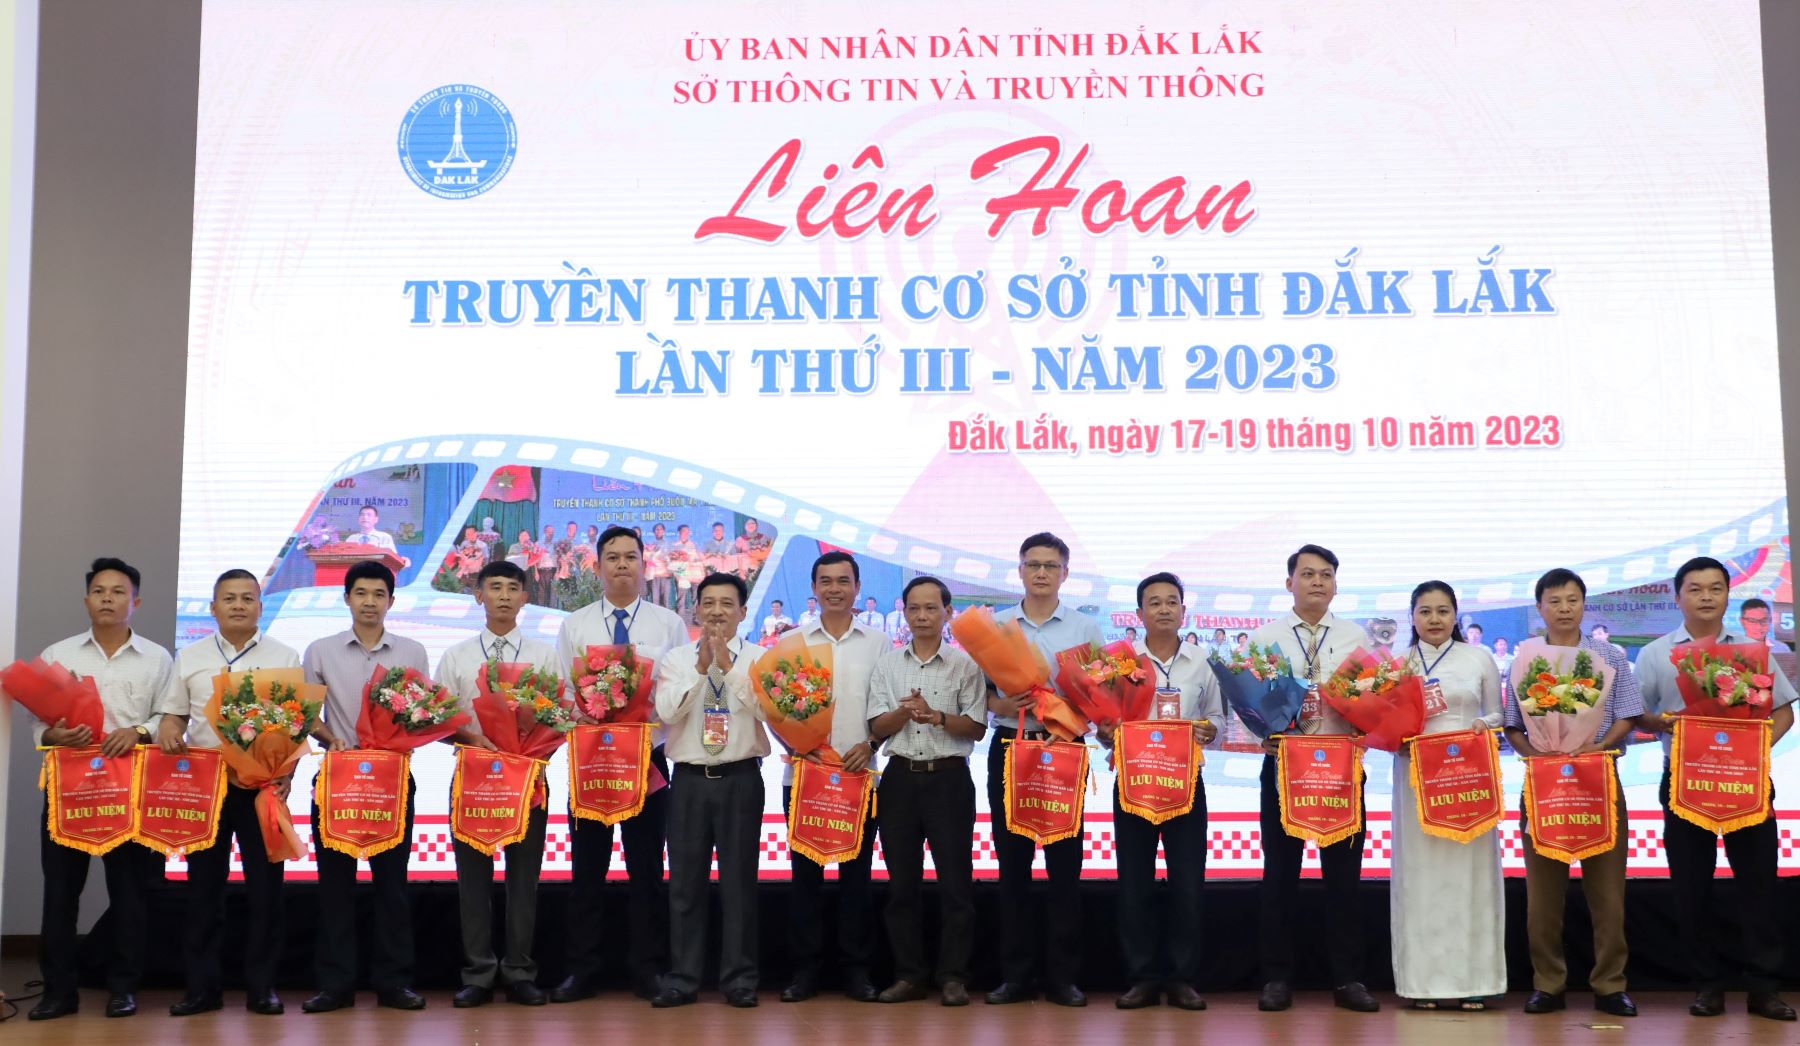 Khai mạc Liên hoan Truyền thanh cơ sở tỉnh Đắk Lắk lần thứ III - năm 2023